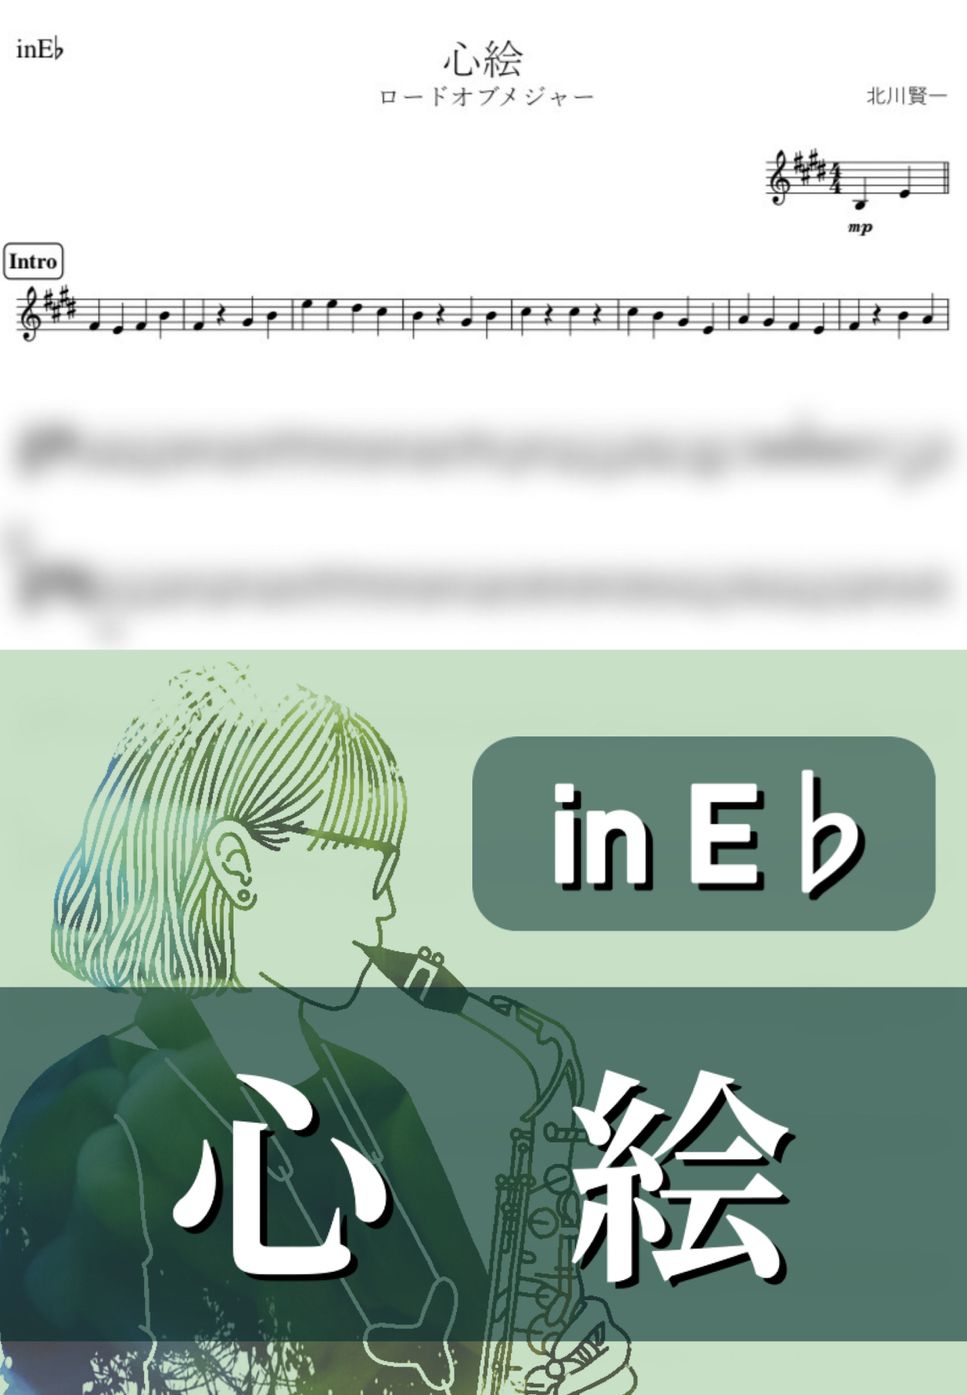 メジャー - 心絵 (E♭) by kanamusic